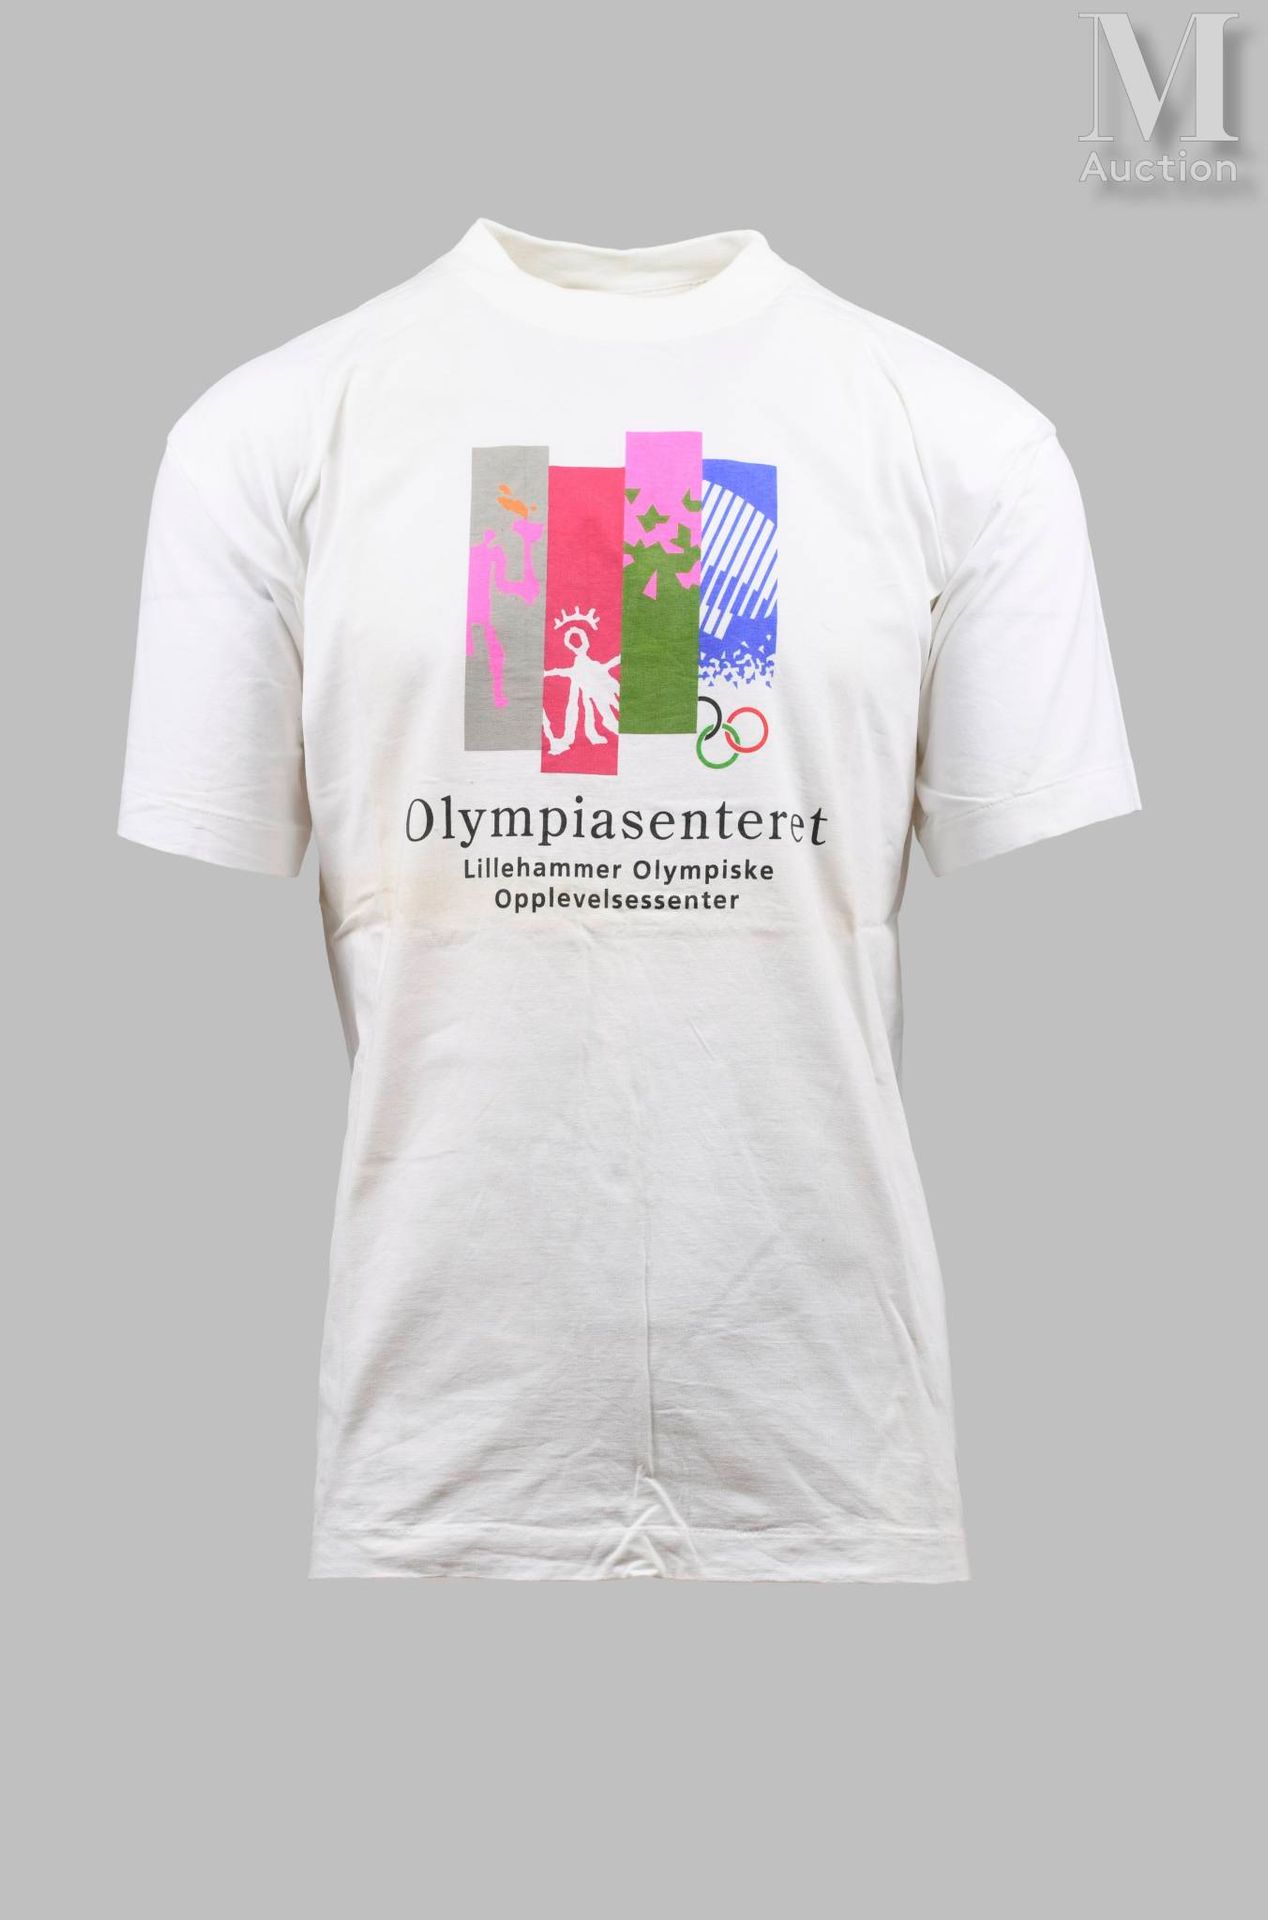 LILLEHAMMER 1994 1994年利勒哈默尔。一套7件T恤衫和2条围巾，用于第十七届冬季奥林匹克运动会。尺寸为L和XL。全新，状态良好。一共9件。